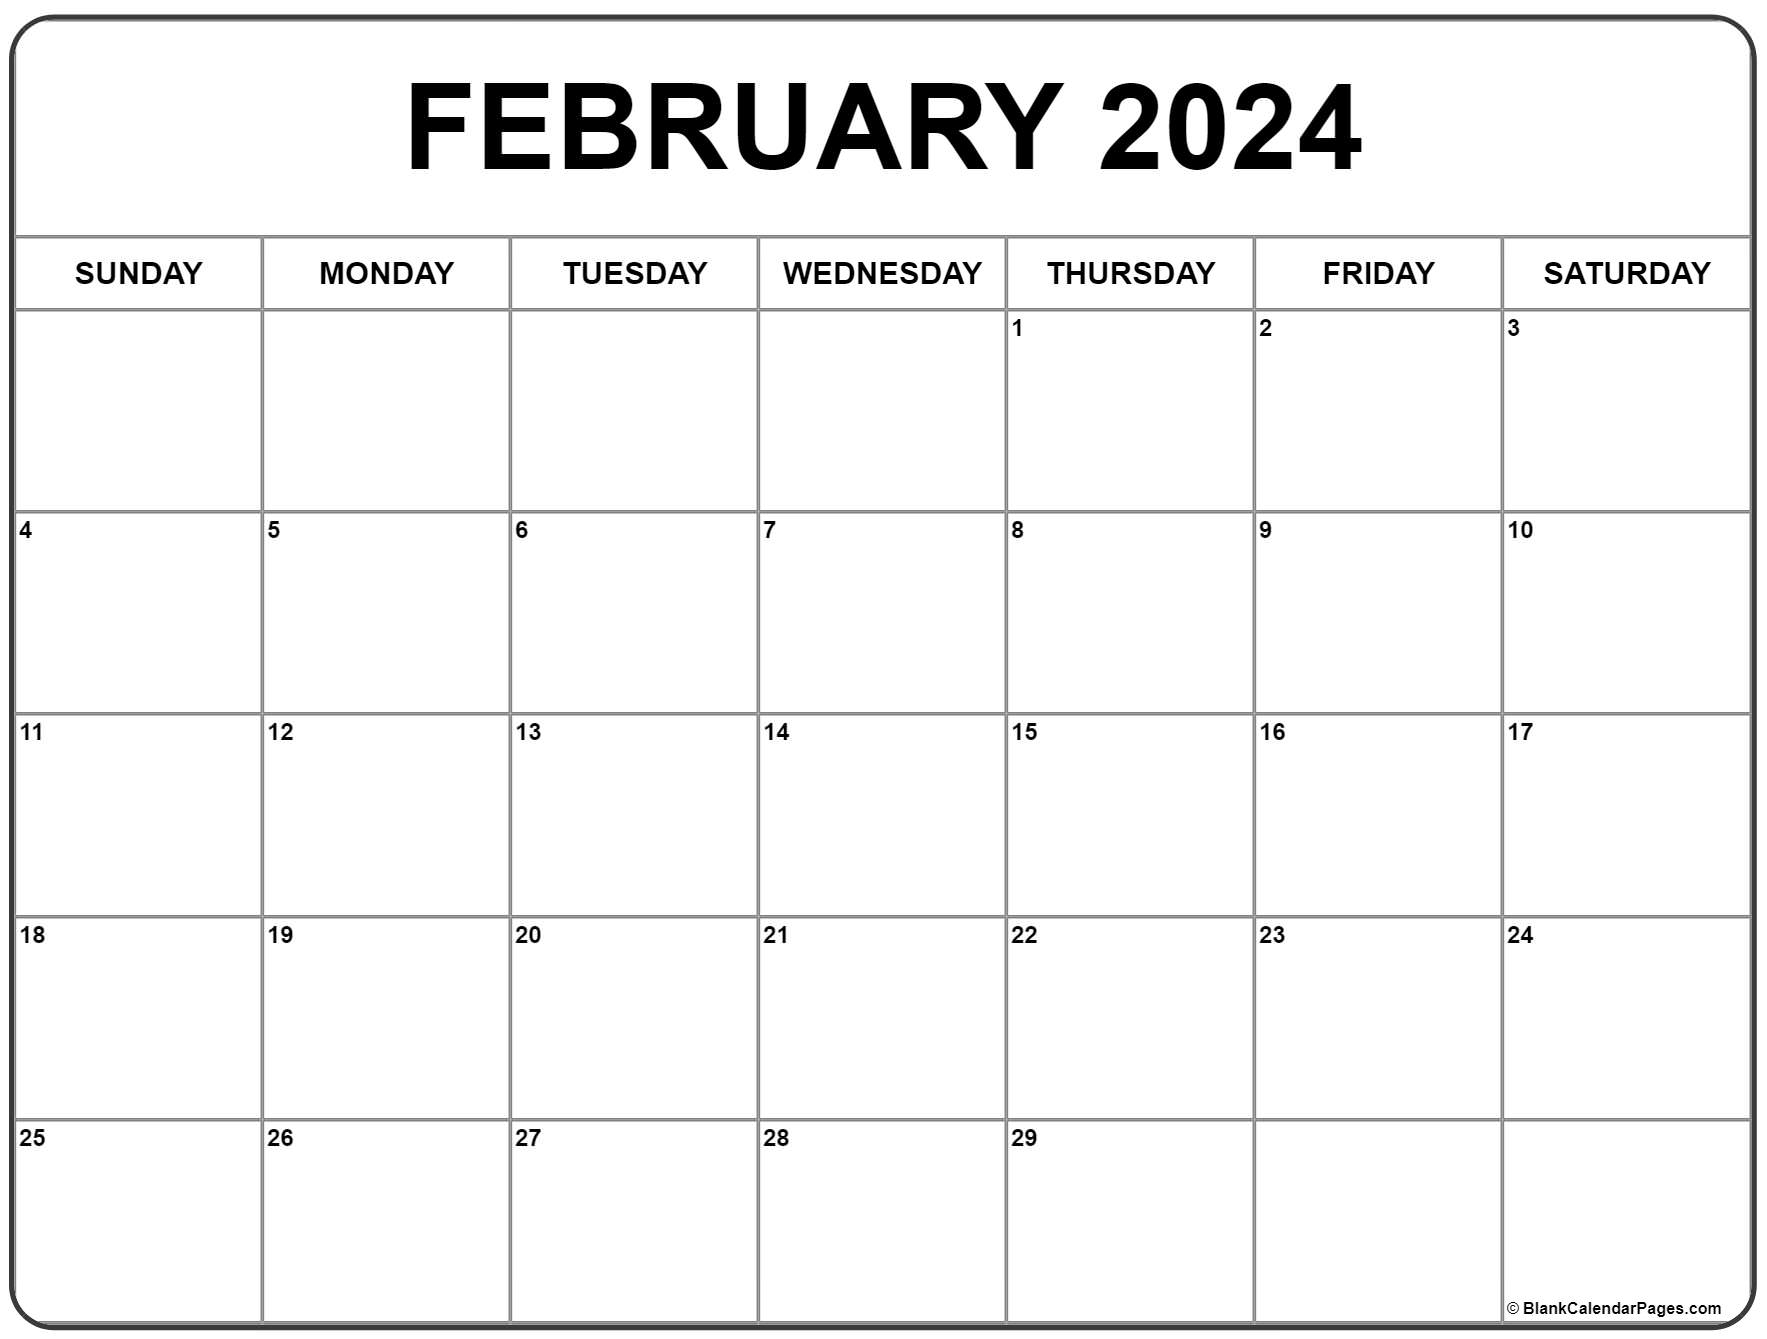 February 2024 Calendar | Free Printable Calendar for Calendar 2024 Feb Printable